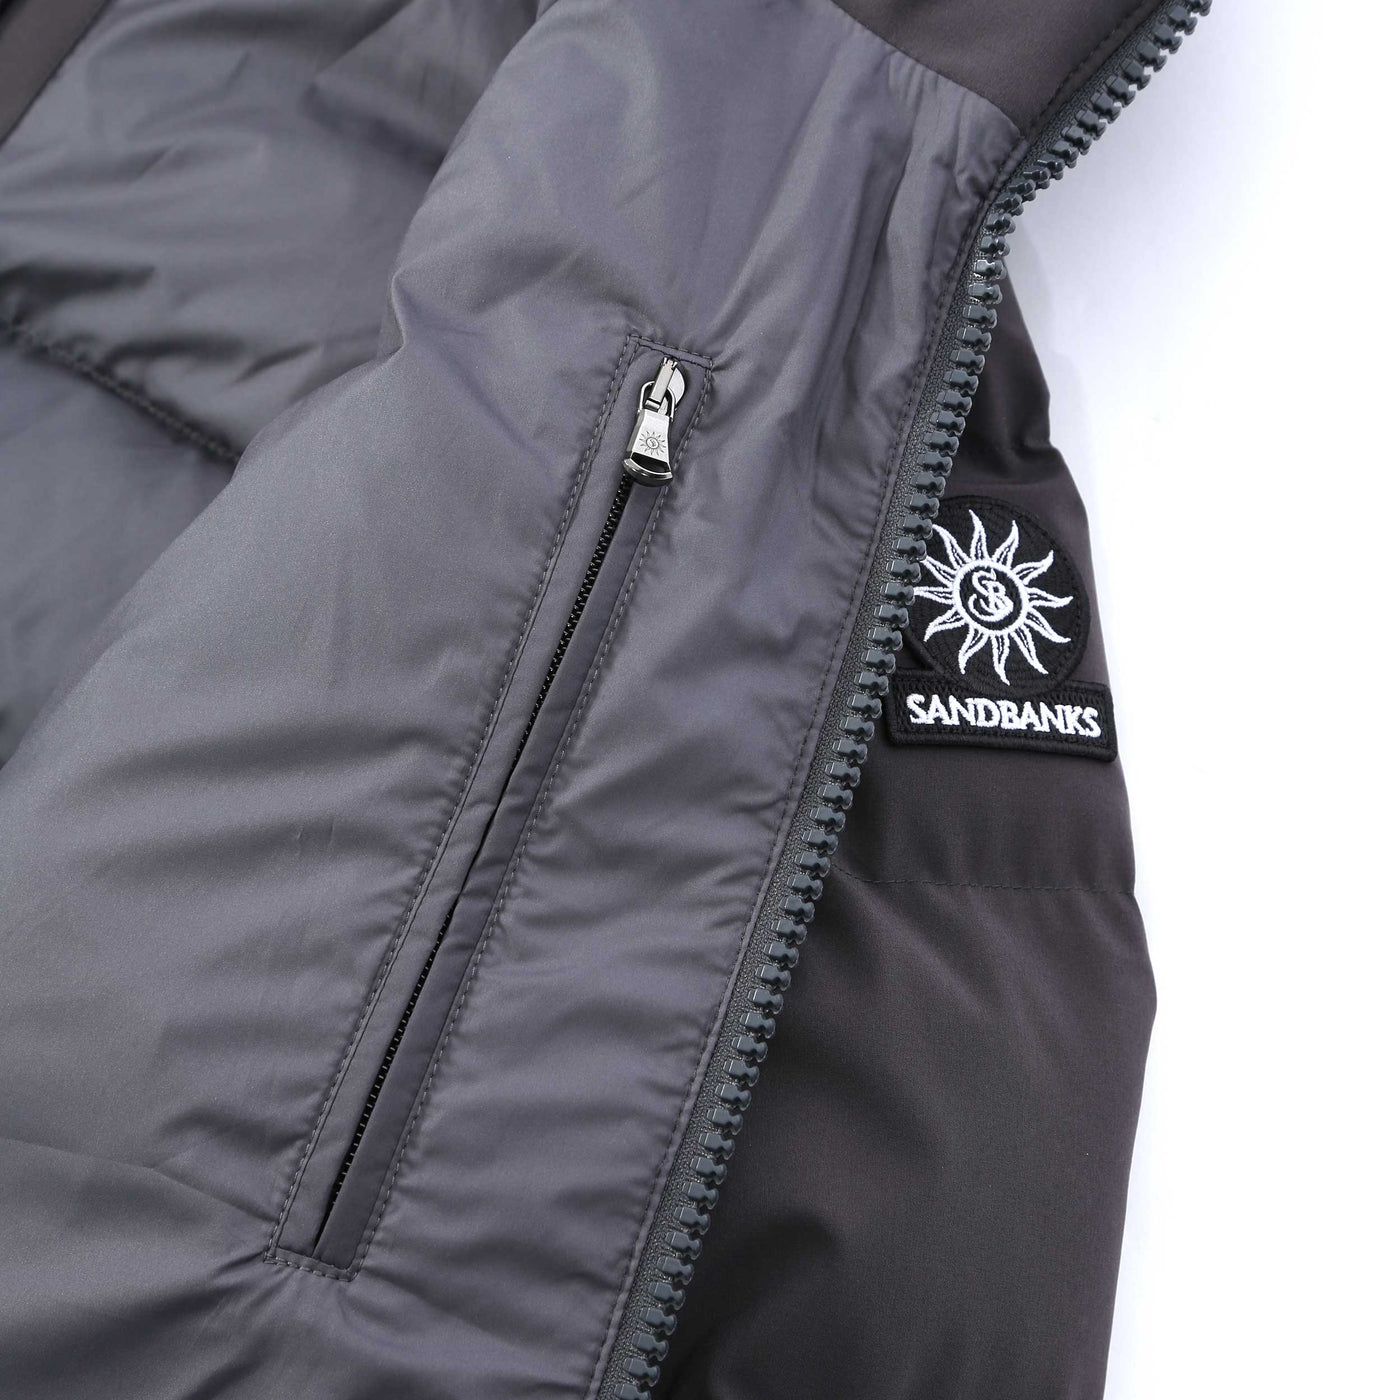 Sandbanks Banks Puffer Jacket in Charcoal Inside Pocket